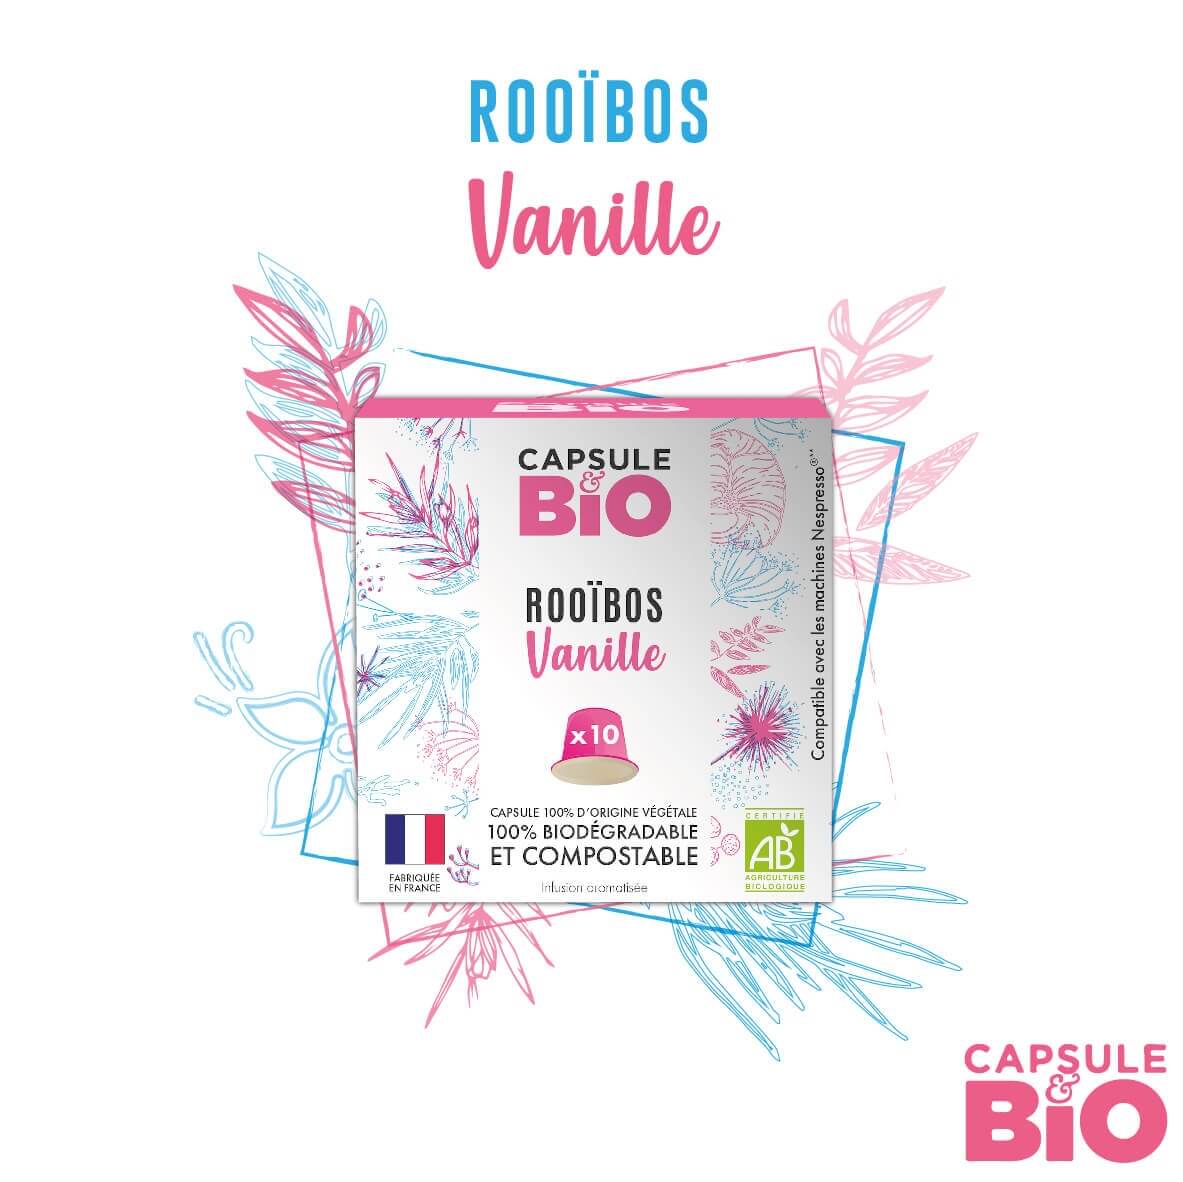 capsulebio rooibos vanille boite de 10 capsules  1 